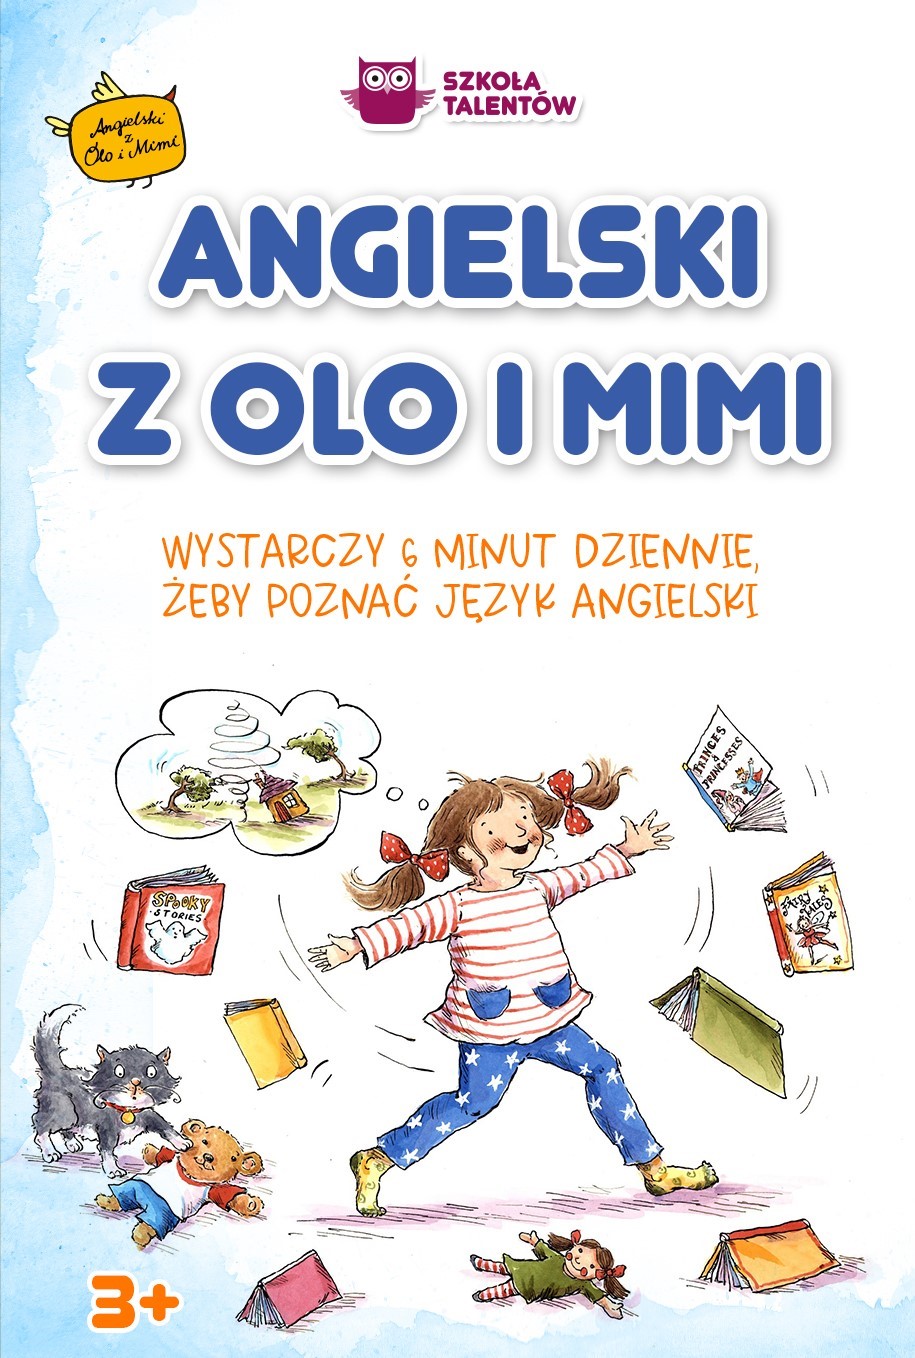 Okładka:Angielski z Olo i Mimi. Kurs języka angielskiego dla dzieci. Książki i słownik obrazkowy 